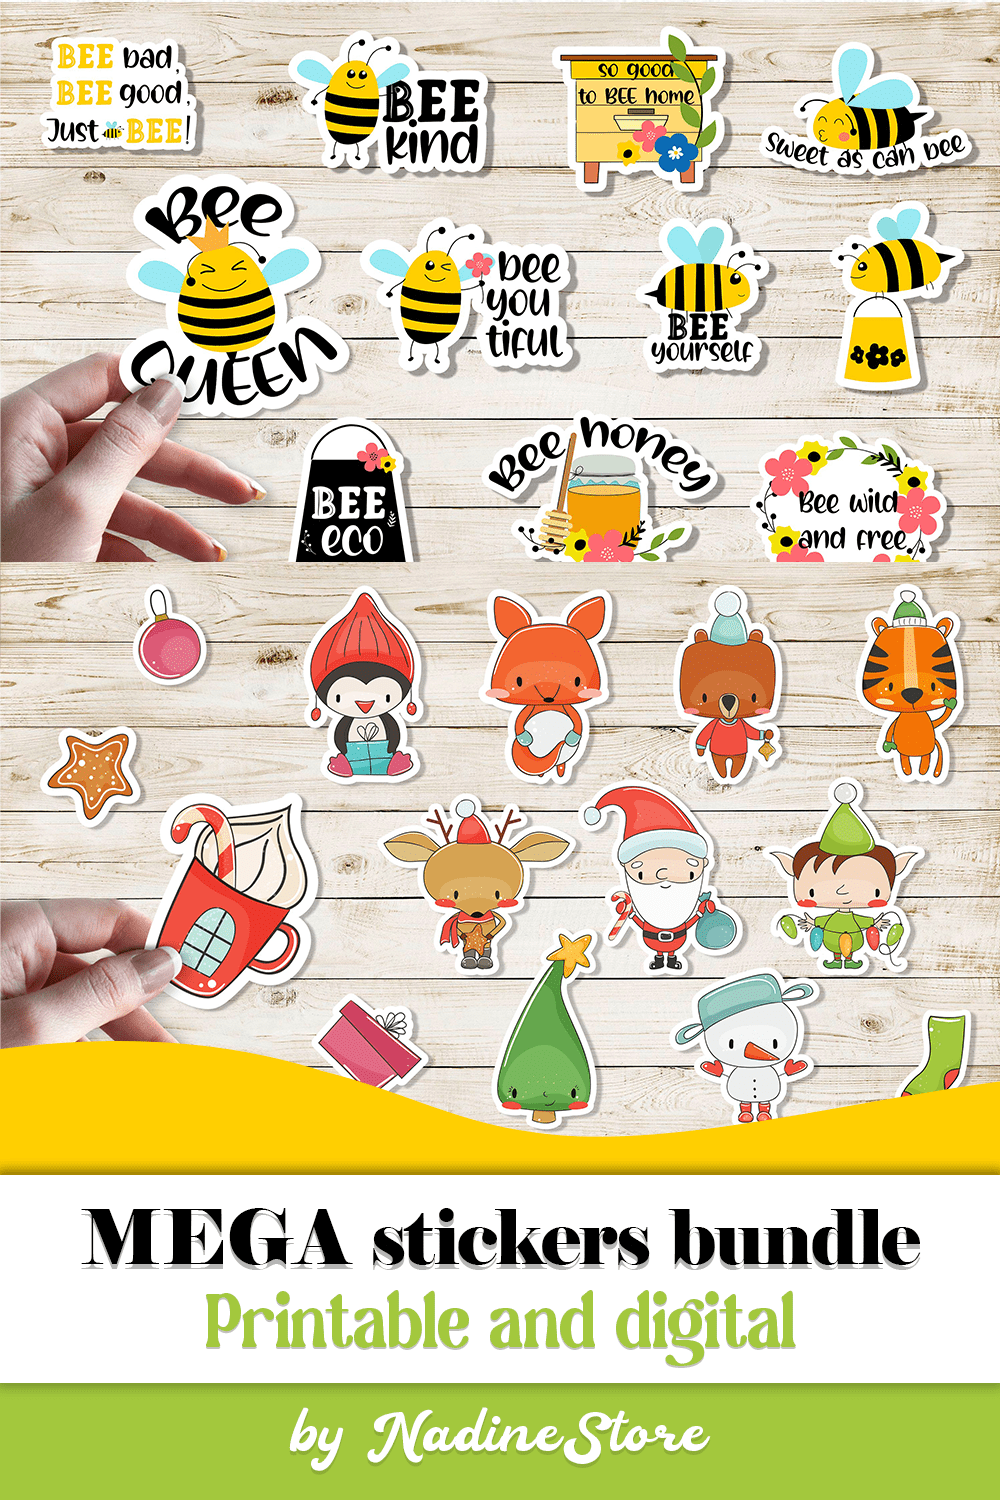 MEGA stickers bundle - pinterest image preview.